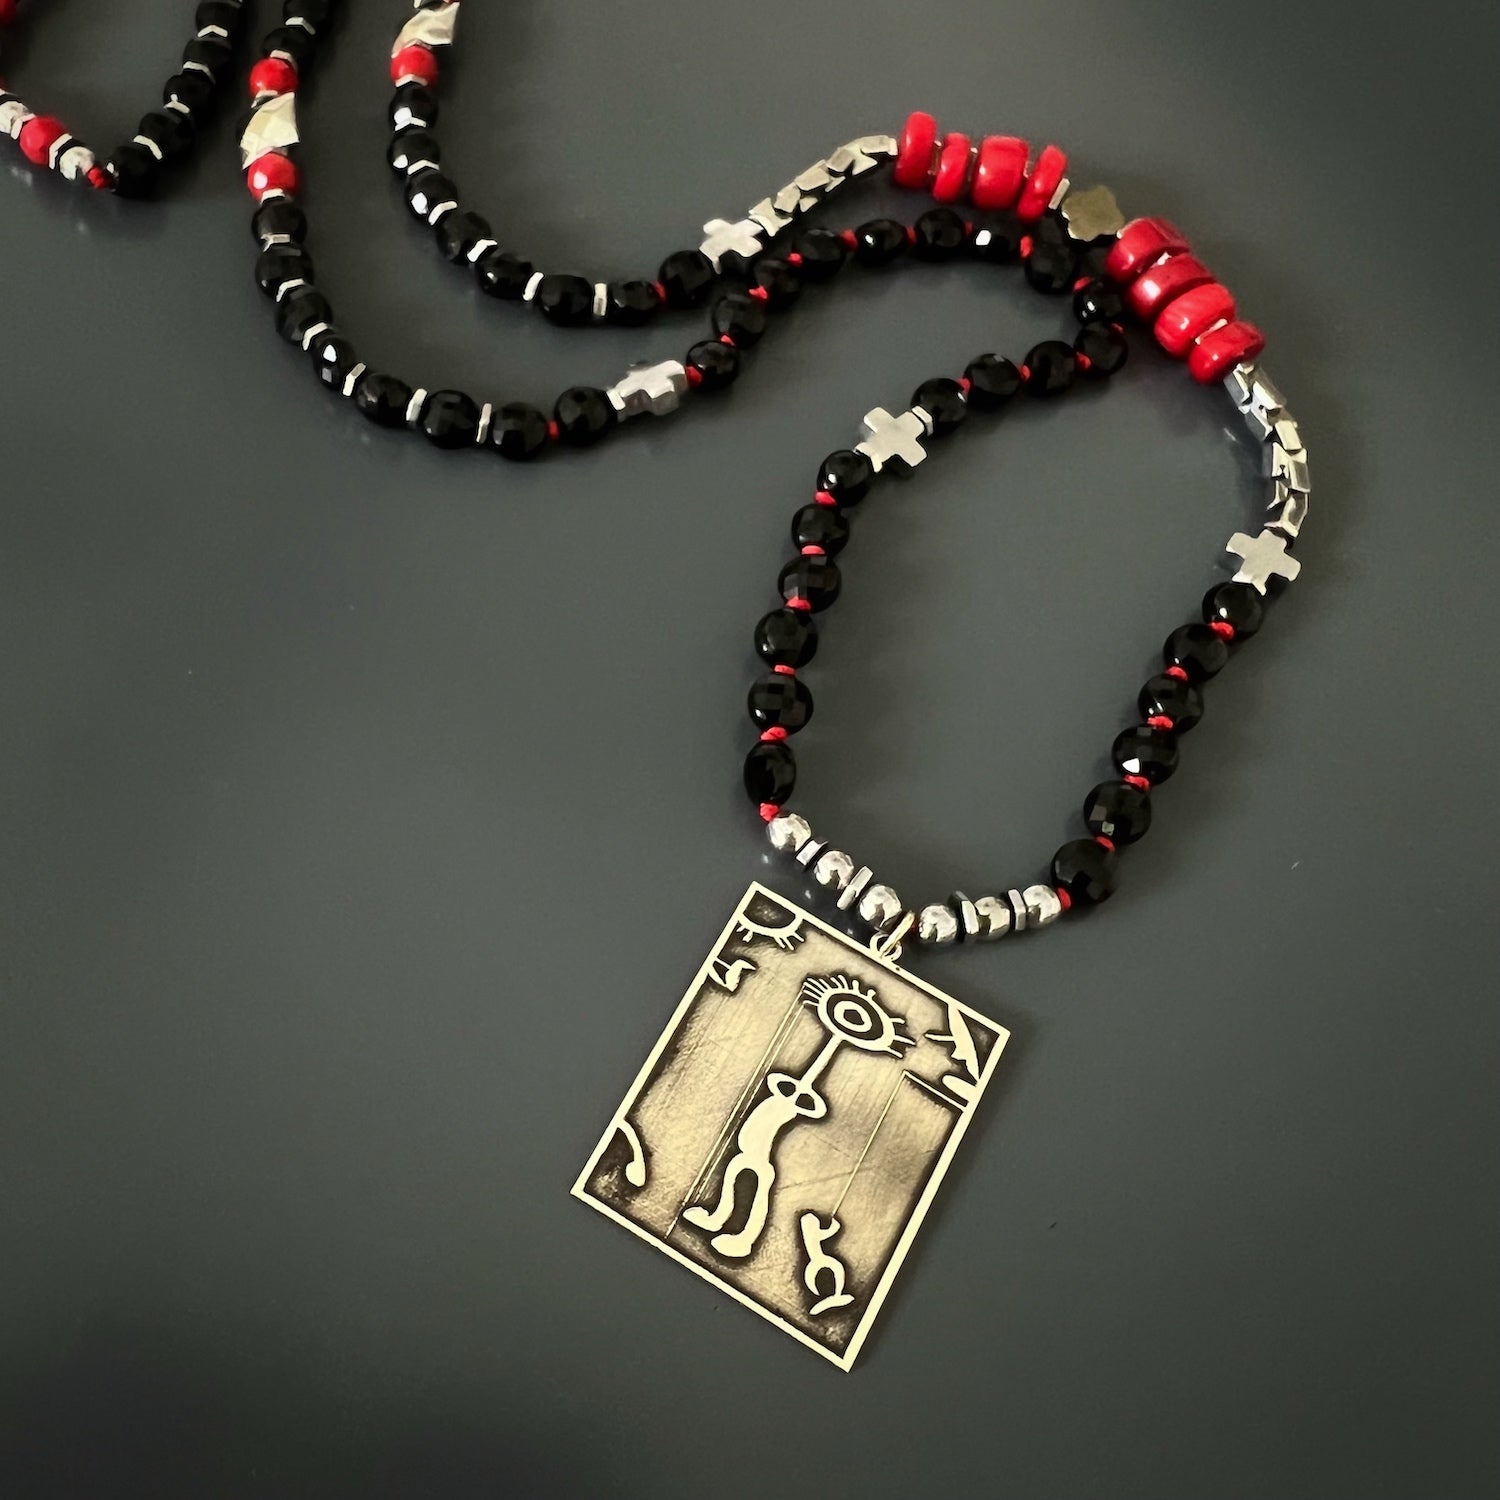 Stylish and Meaningful - The Shamanic Spirit Onyx Necklace.